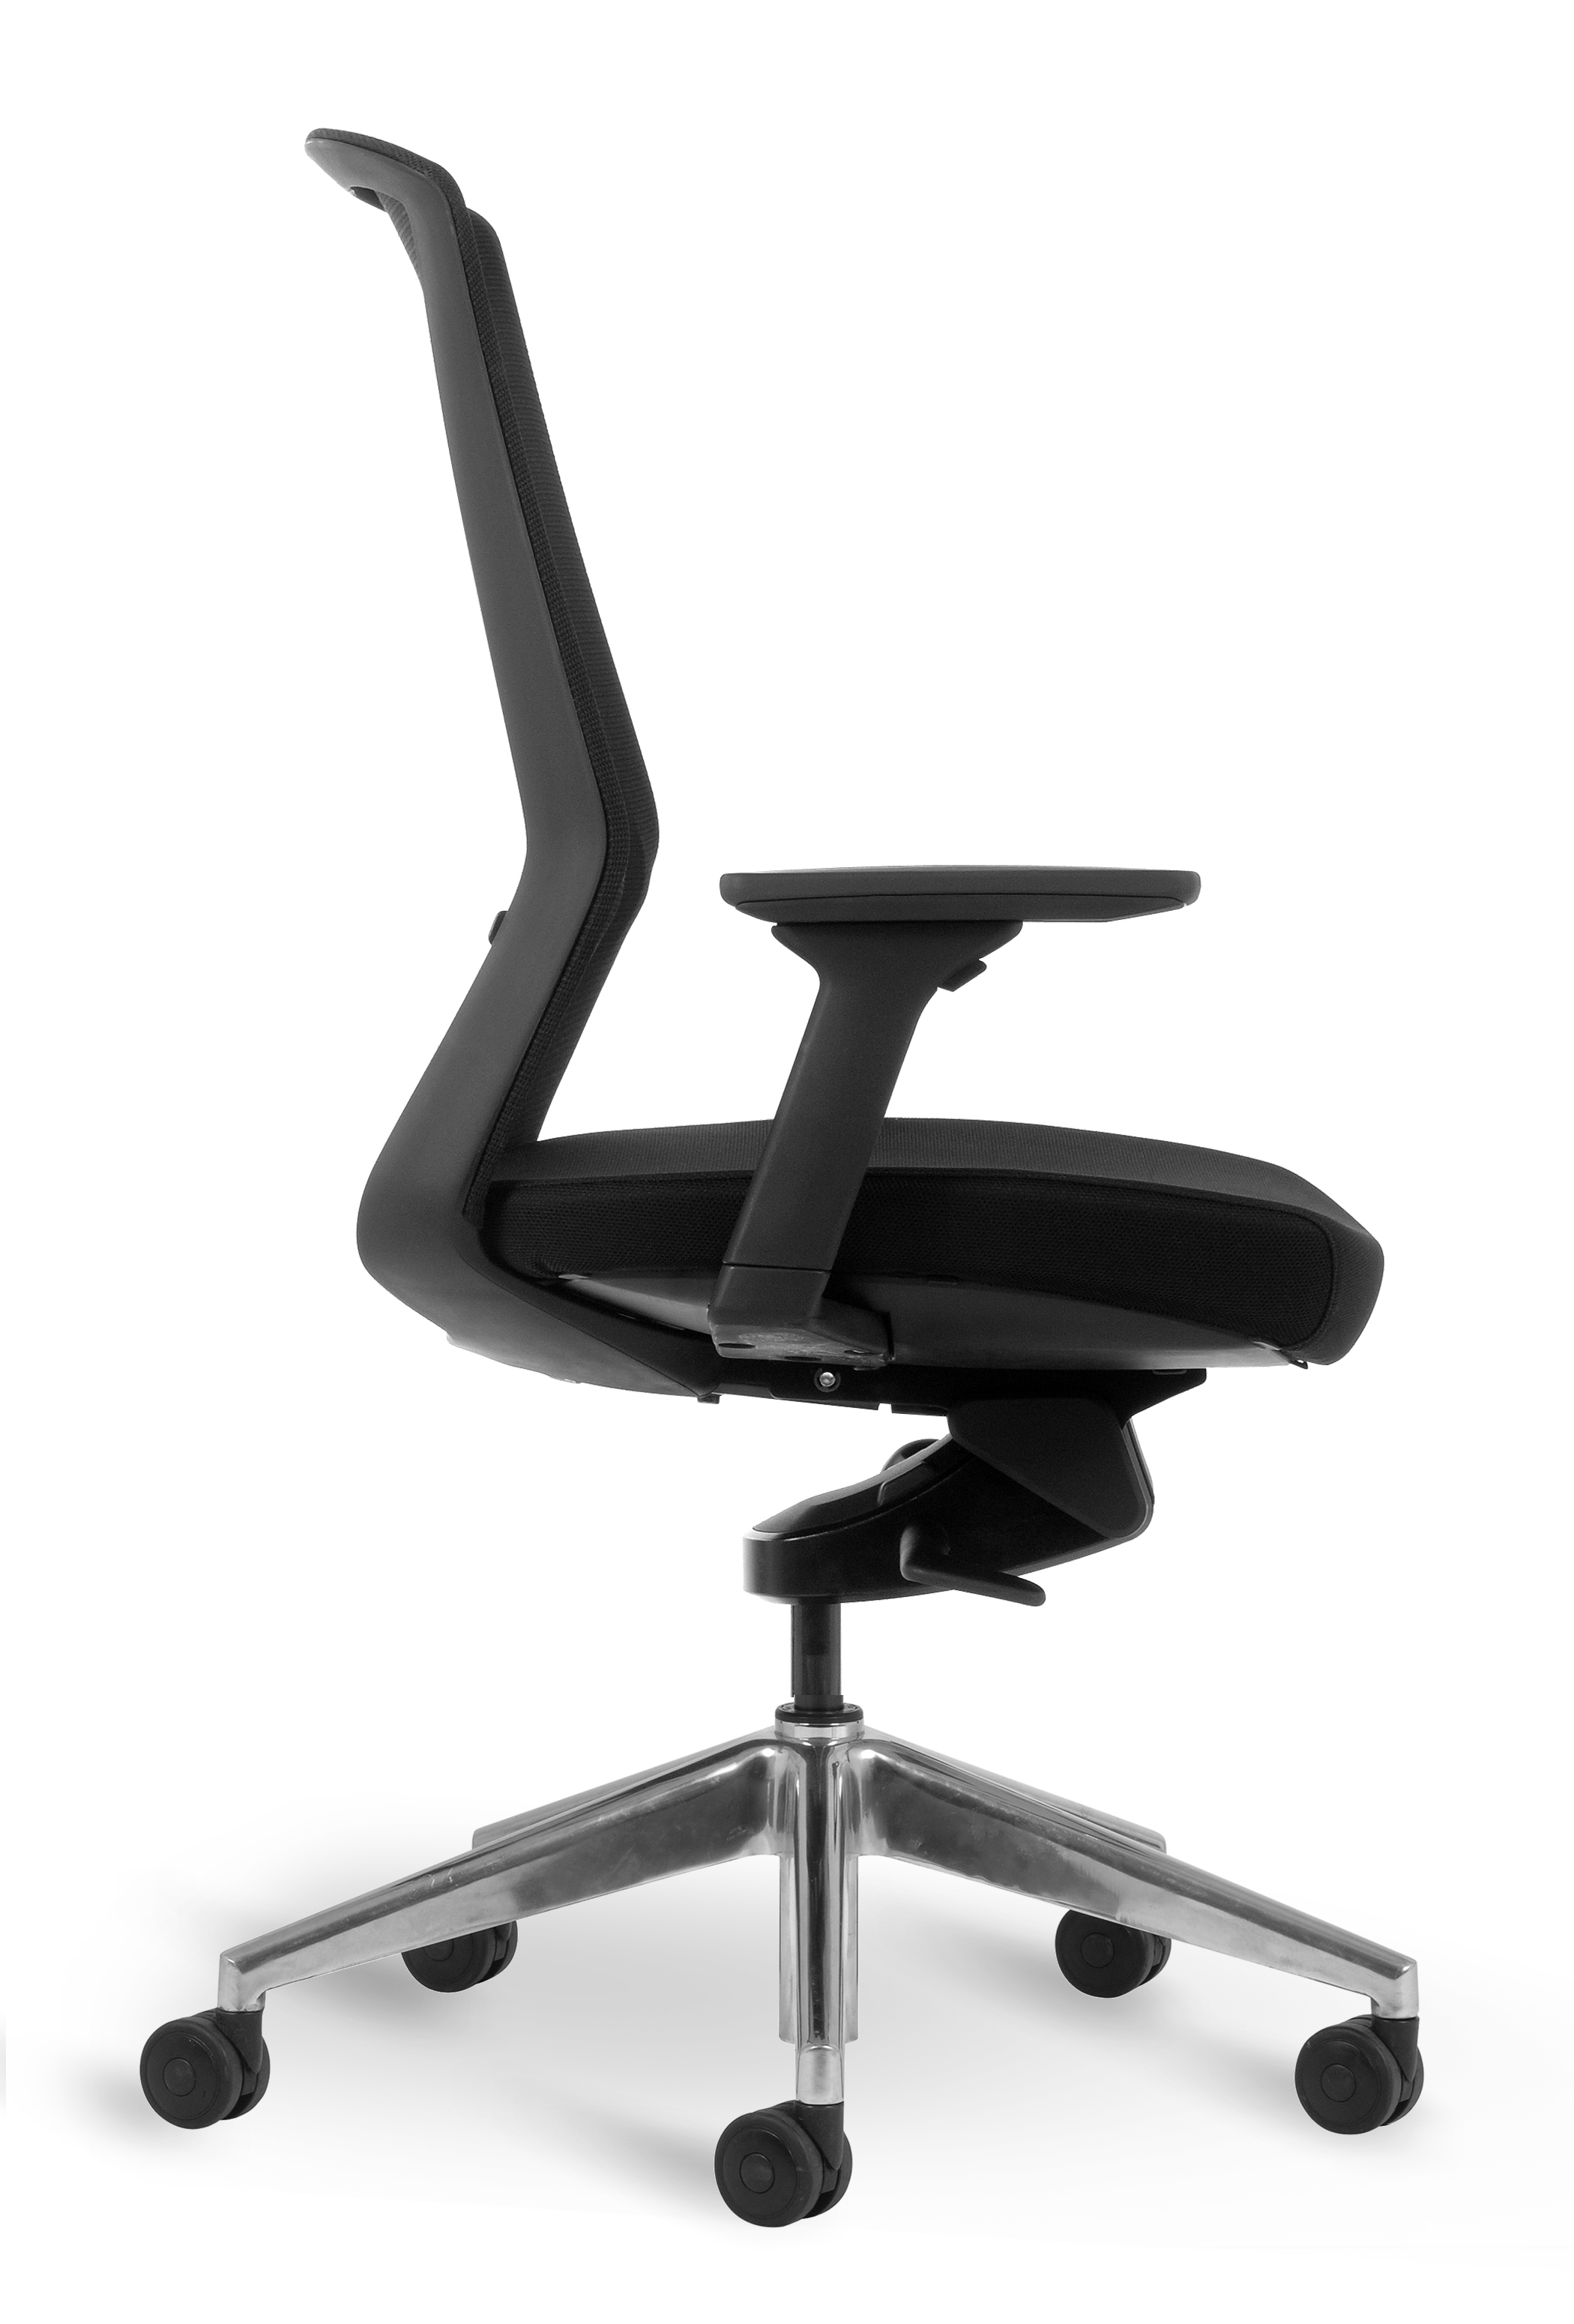 WS - J1 task chair - Black, polished base (Side)